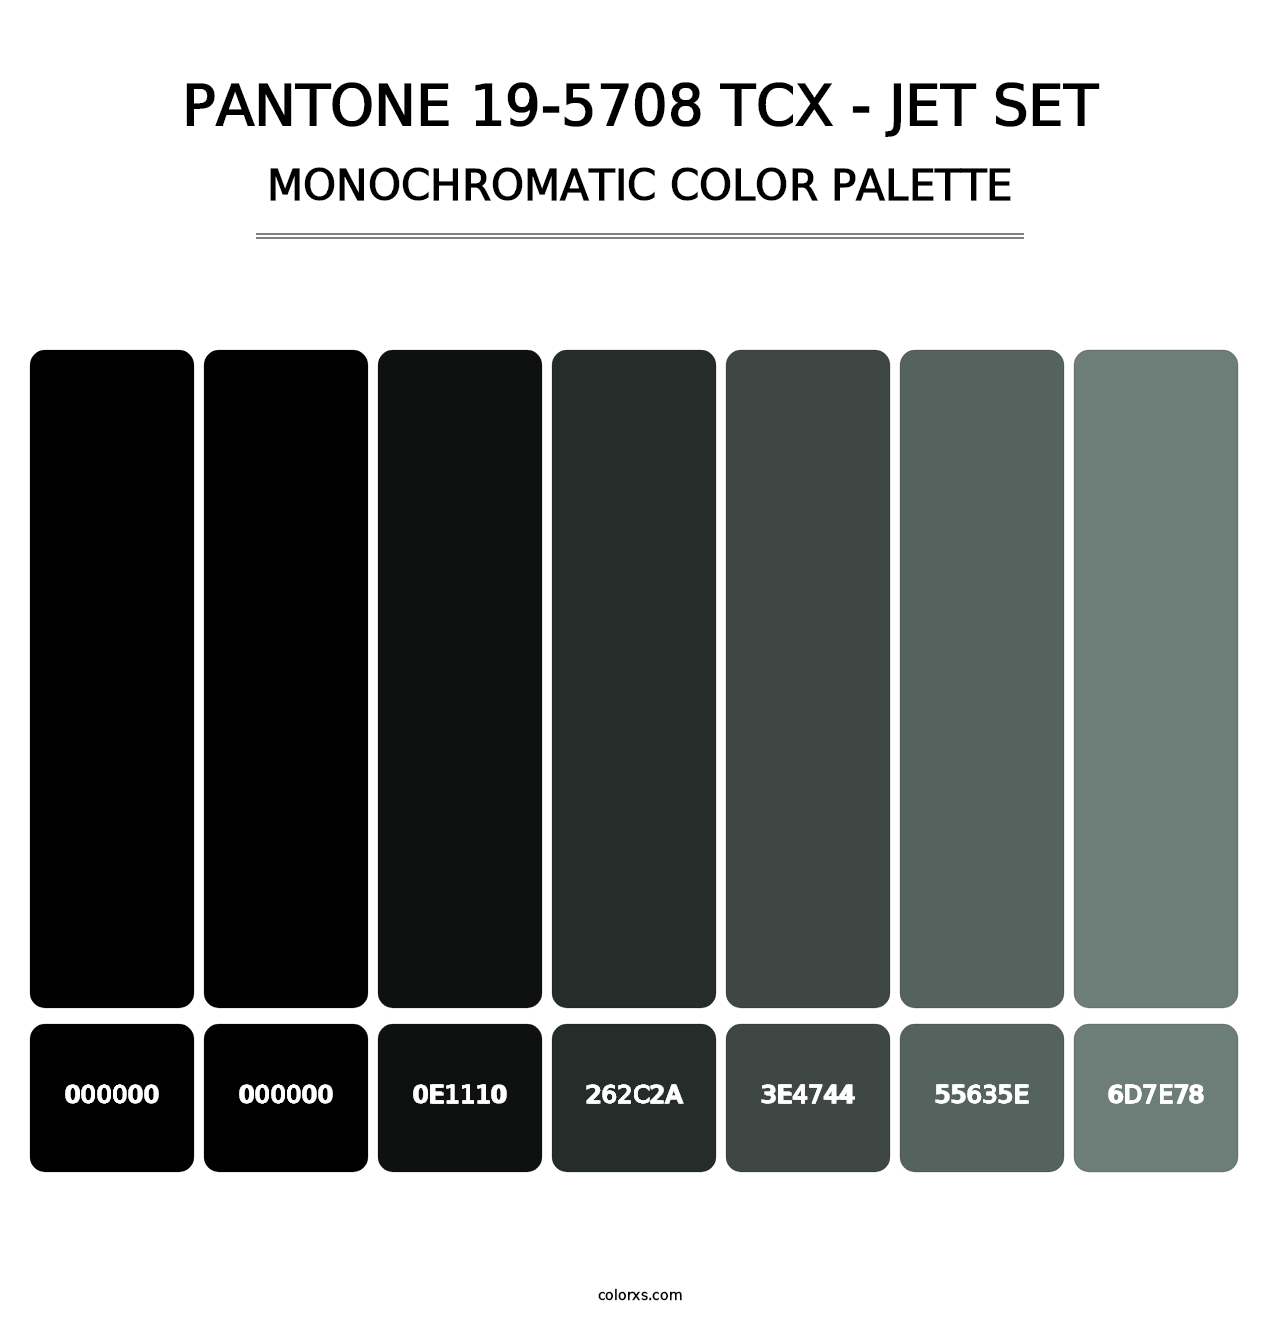 PANTONE 19-5708 TCX - Jet Set - Monochromatic Color Palette